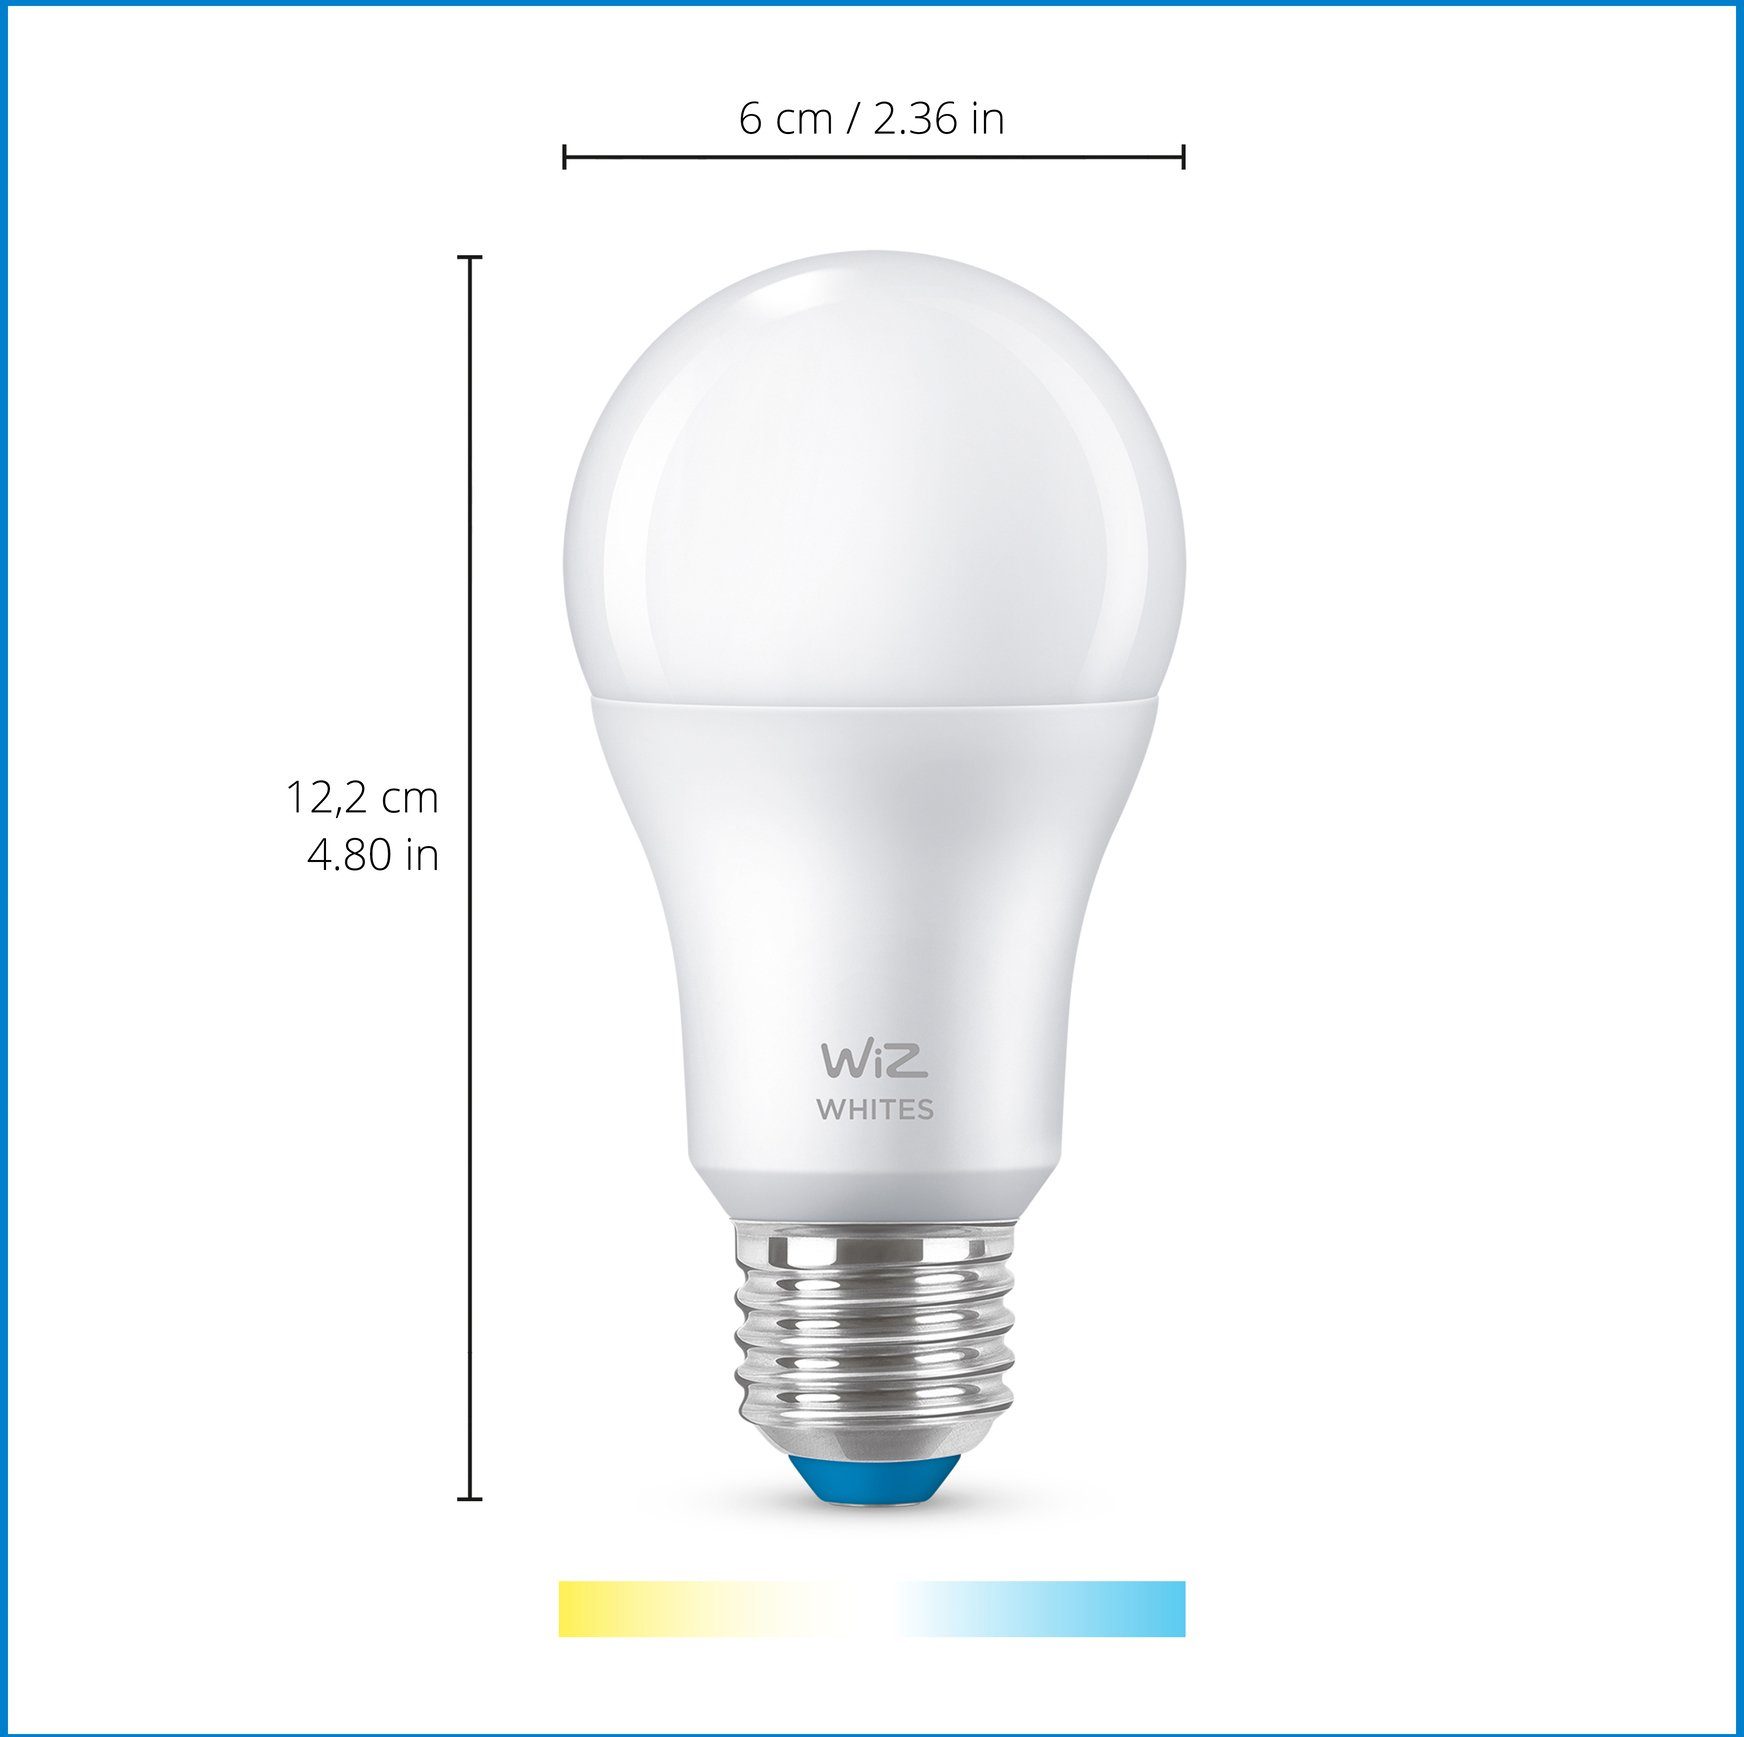 WiZ Standardform 60W Tunable E27 matt Neutralweiß LED-Leuchtmittel Doppelpack, White E27,